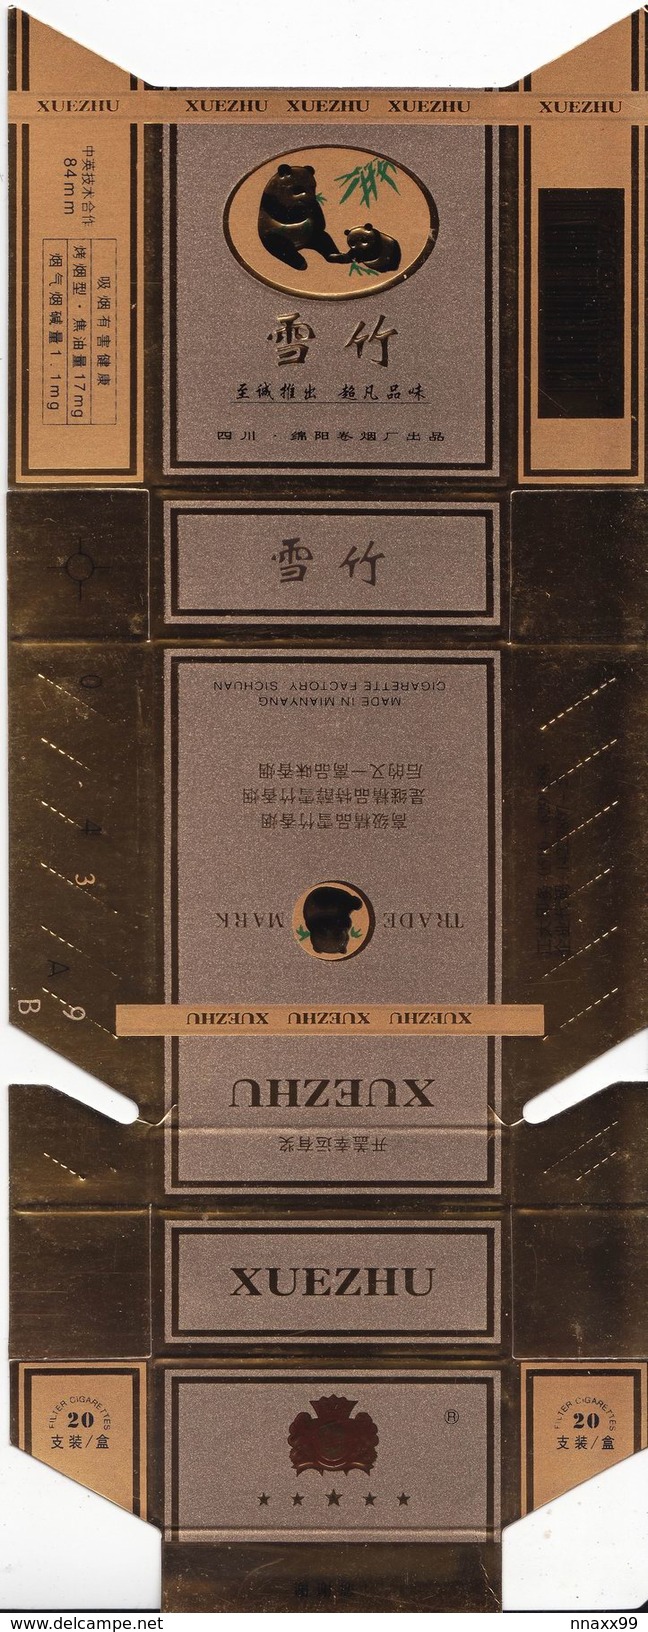 Panda - Giant Panda, XUEZHU Cigarette Box, Hard, Gold, Mianyang Cigarette Factory, Sichuan, China - Empty Cigarettes Boxes